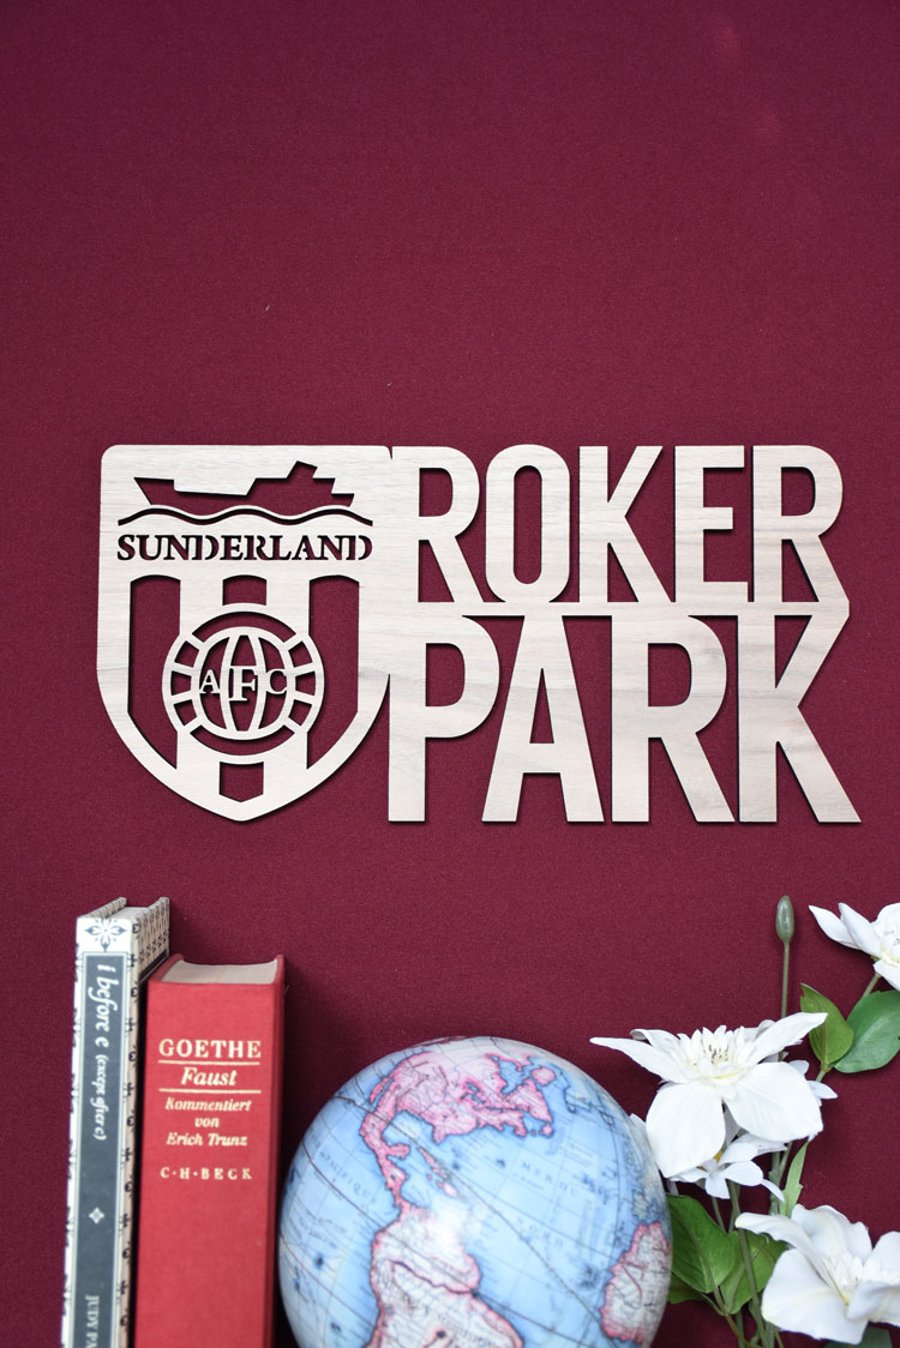 Sunderland FC Roker Park retro Plaque  